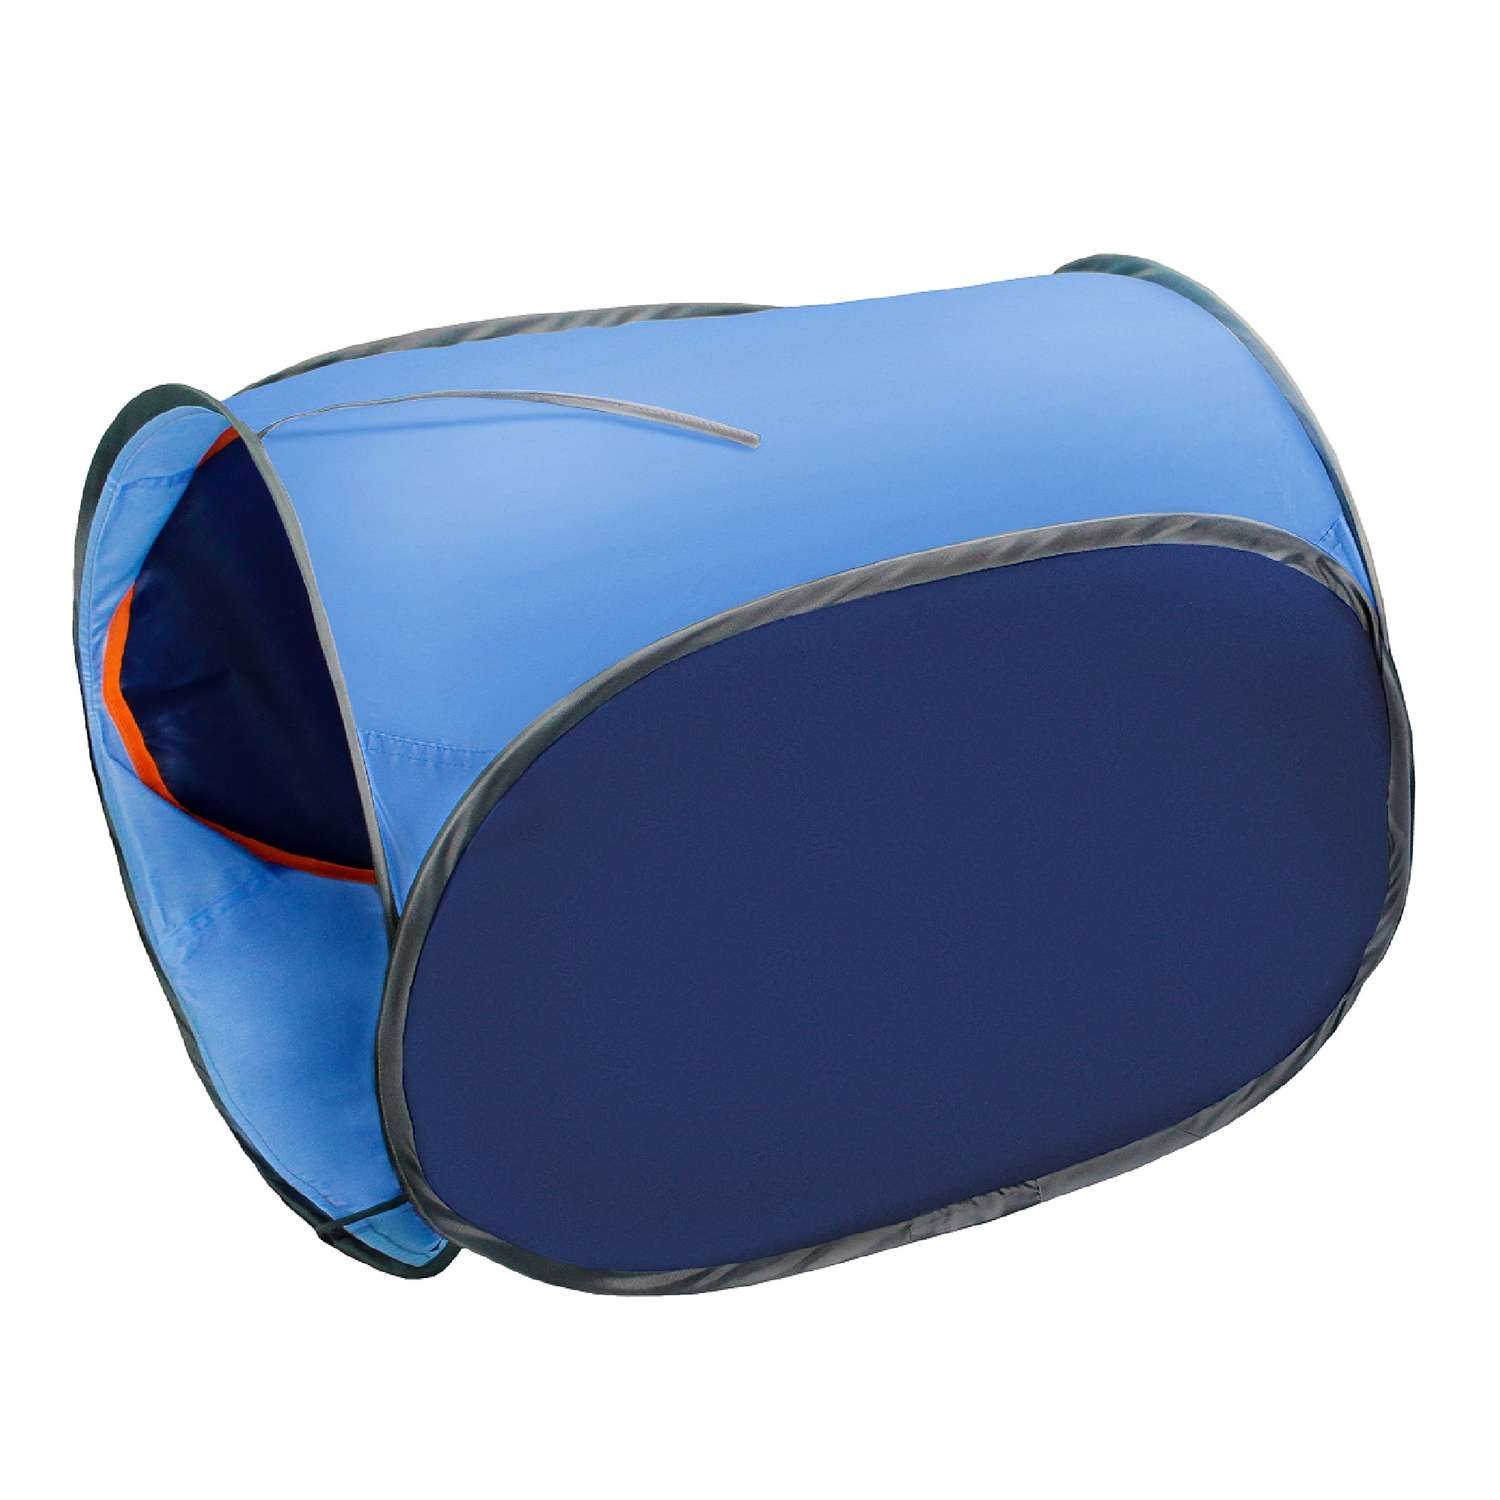 Тоннель для палатки Belon familia односекционный цвет синий и голубой - фото 1